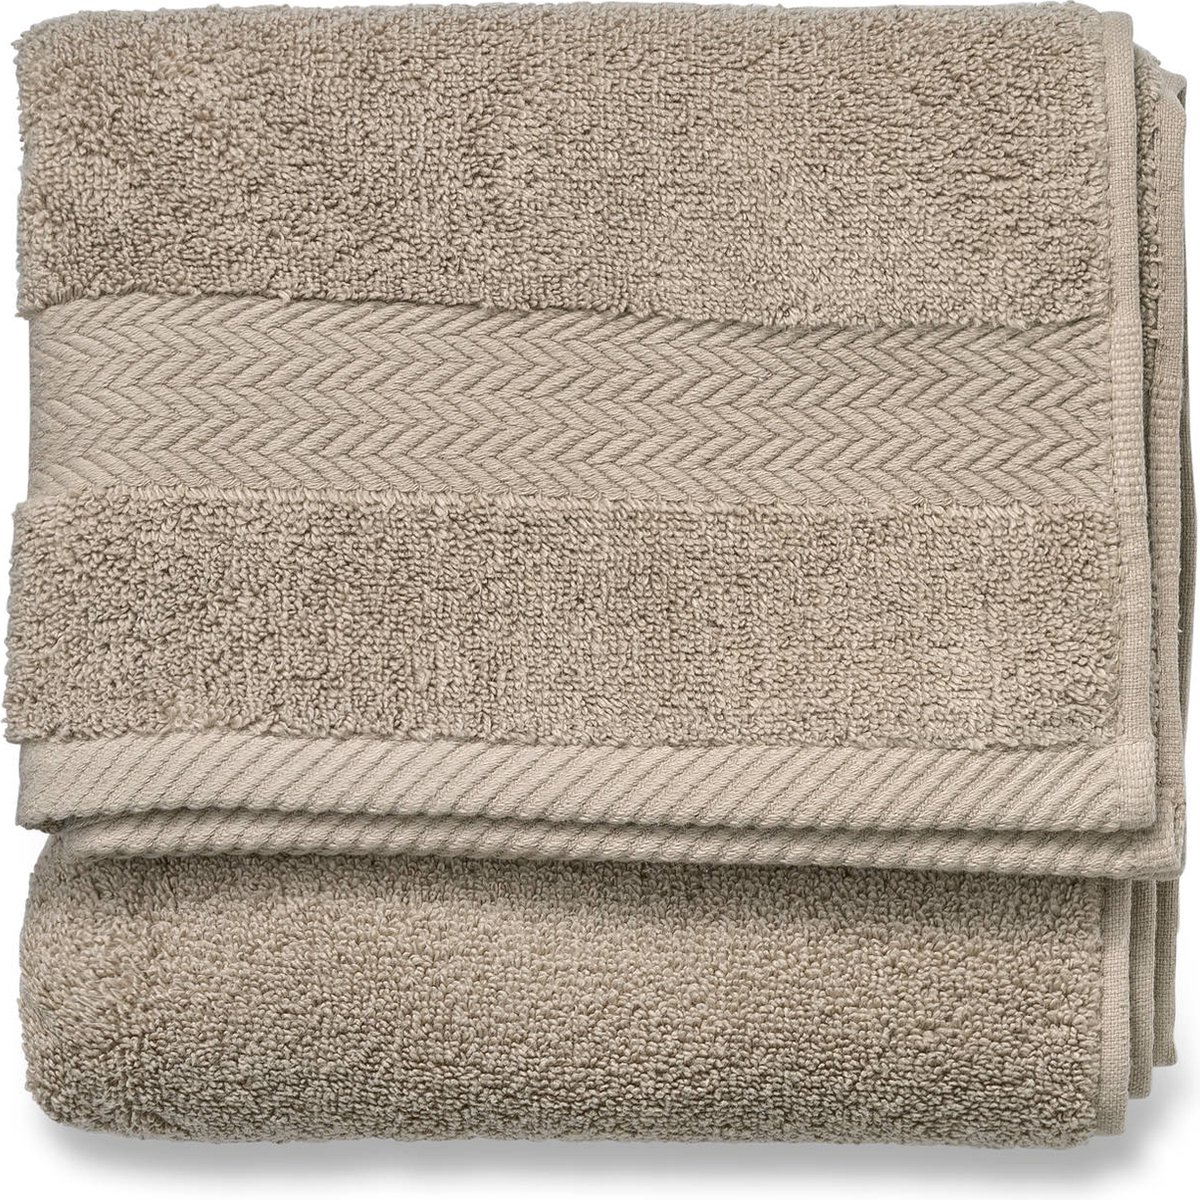 Blokker handdoek 600g - beige - 50x100 cm